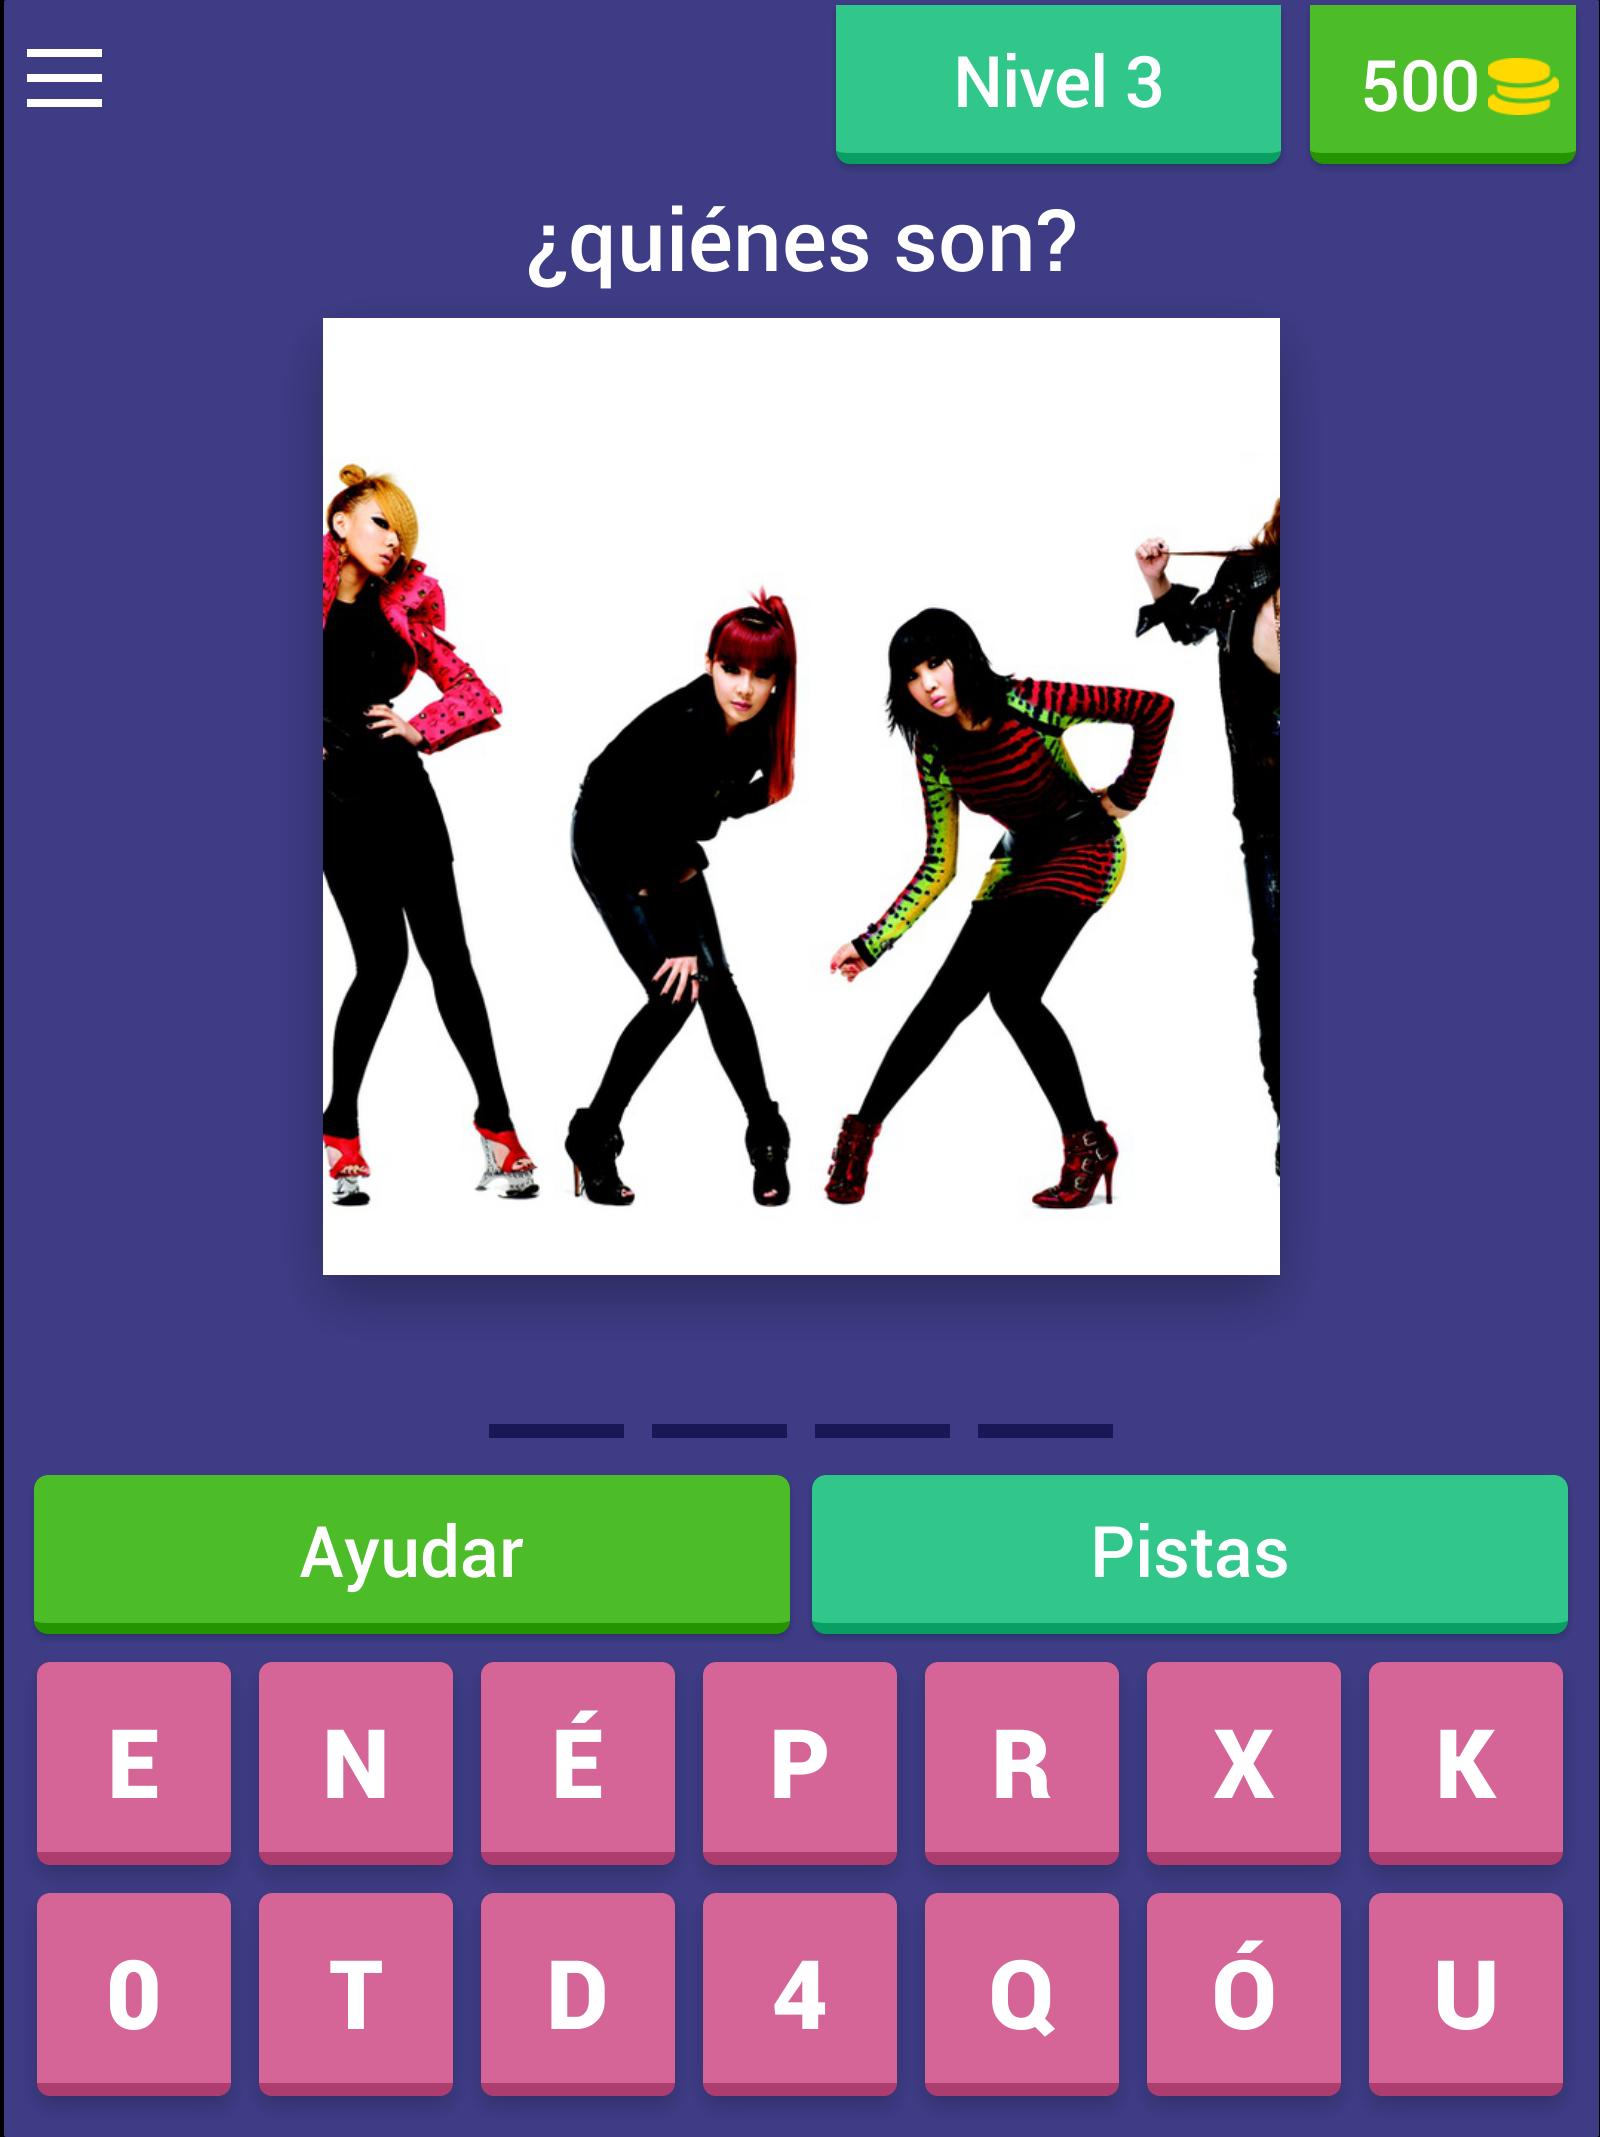 Kpop Adivina La Cancion For Android Apk Download - adivina el juego con emojis roblox amino en español amino